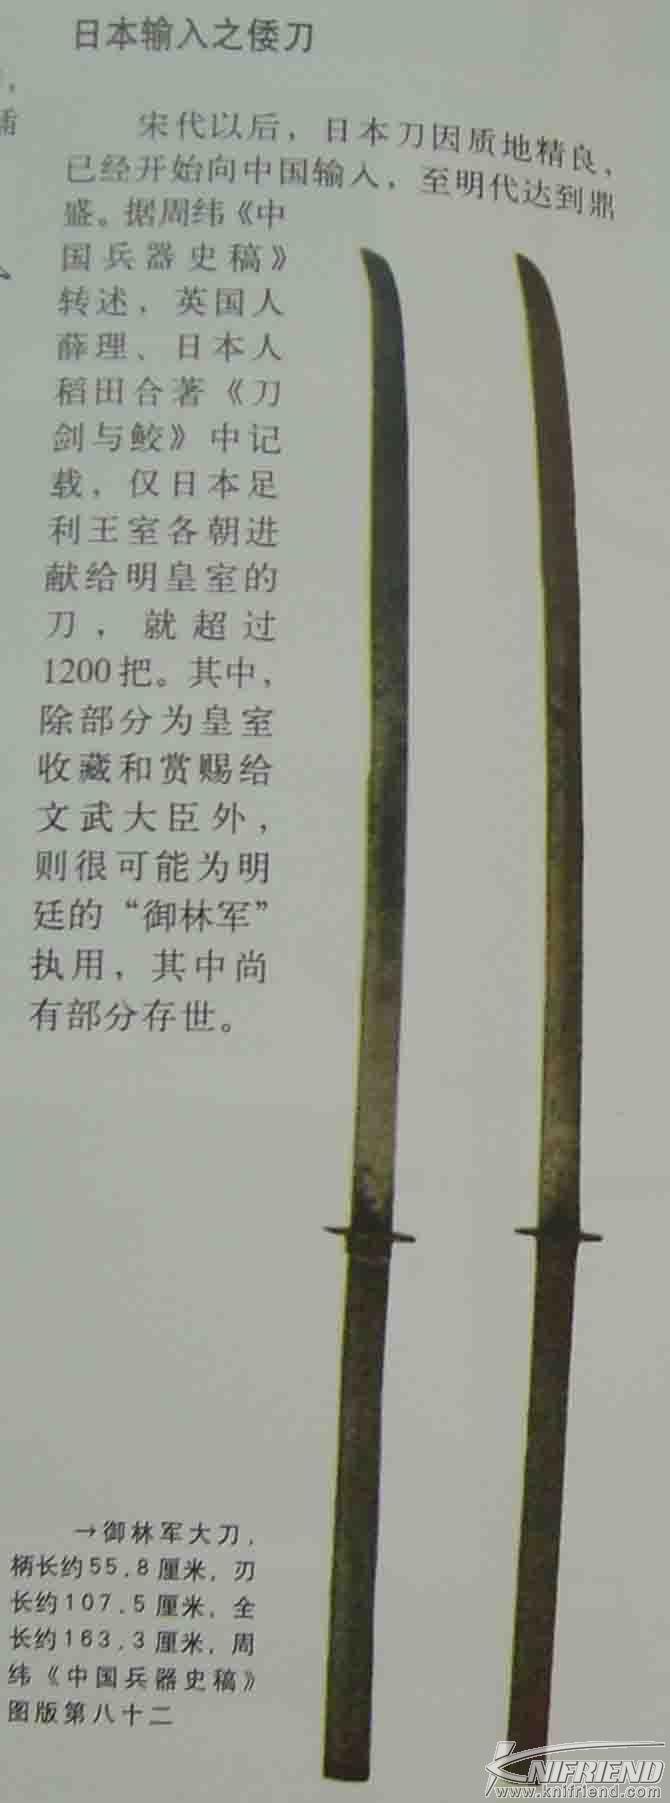 历史的轨迹---中国刀与日本刀发展简述(新手教学帖)_17